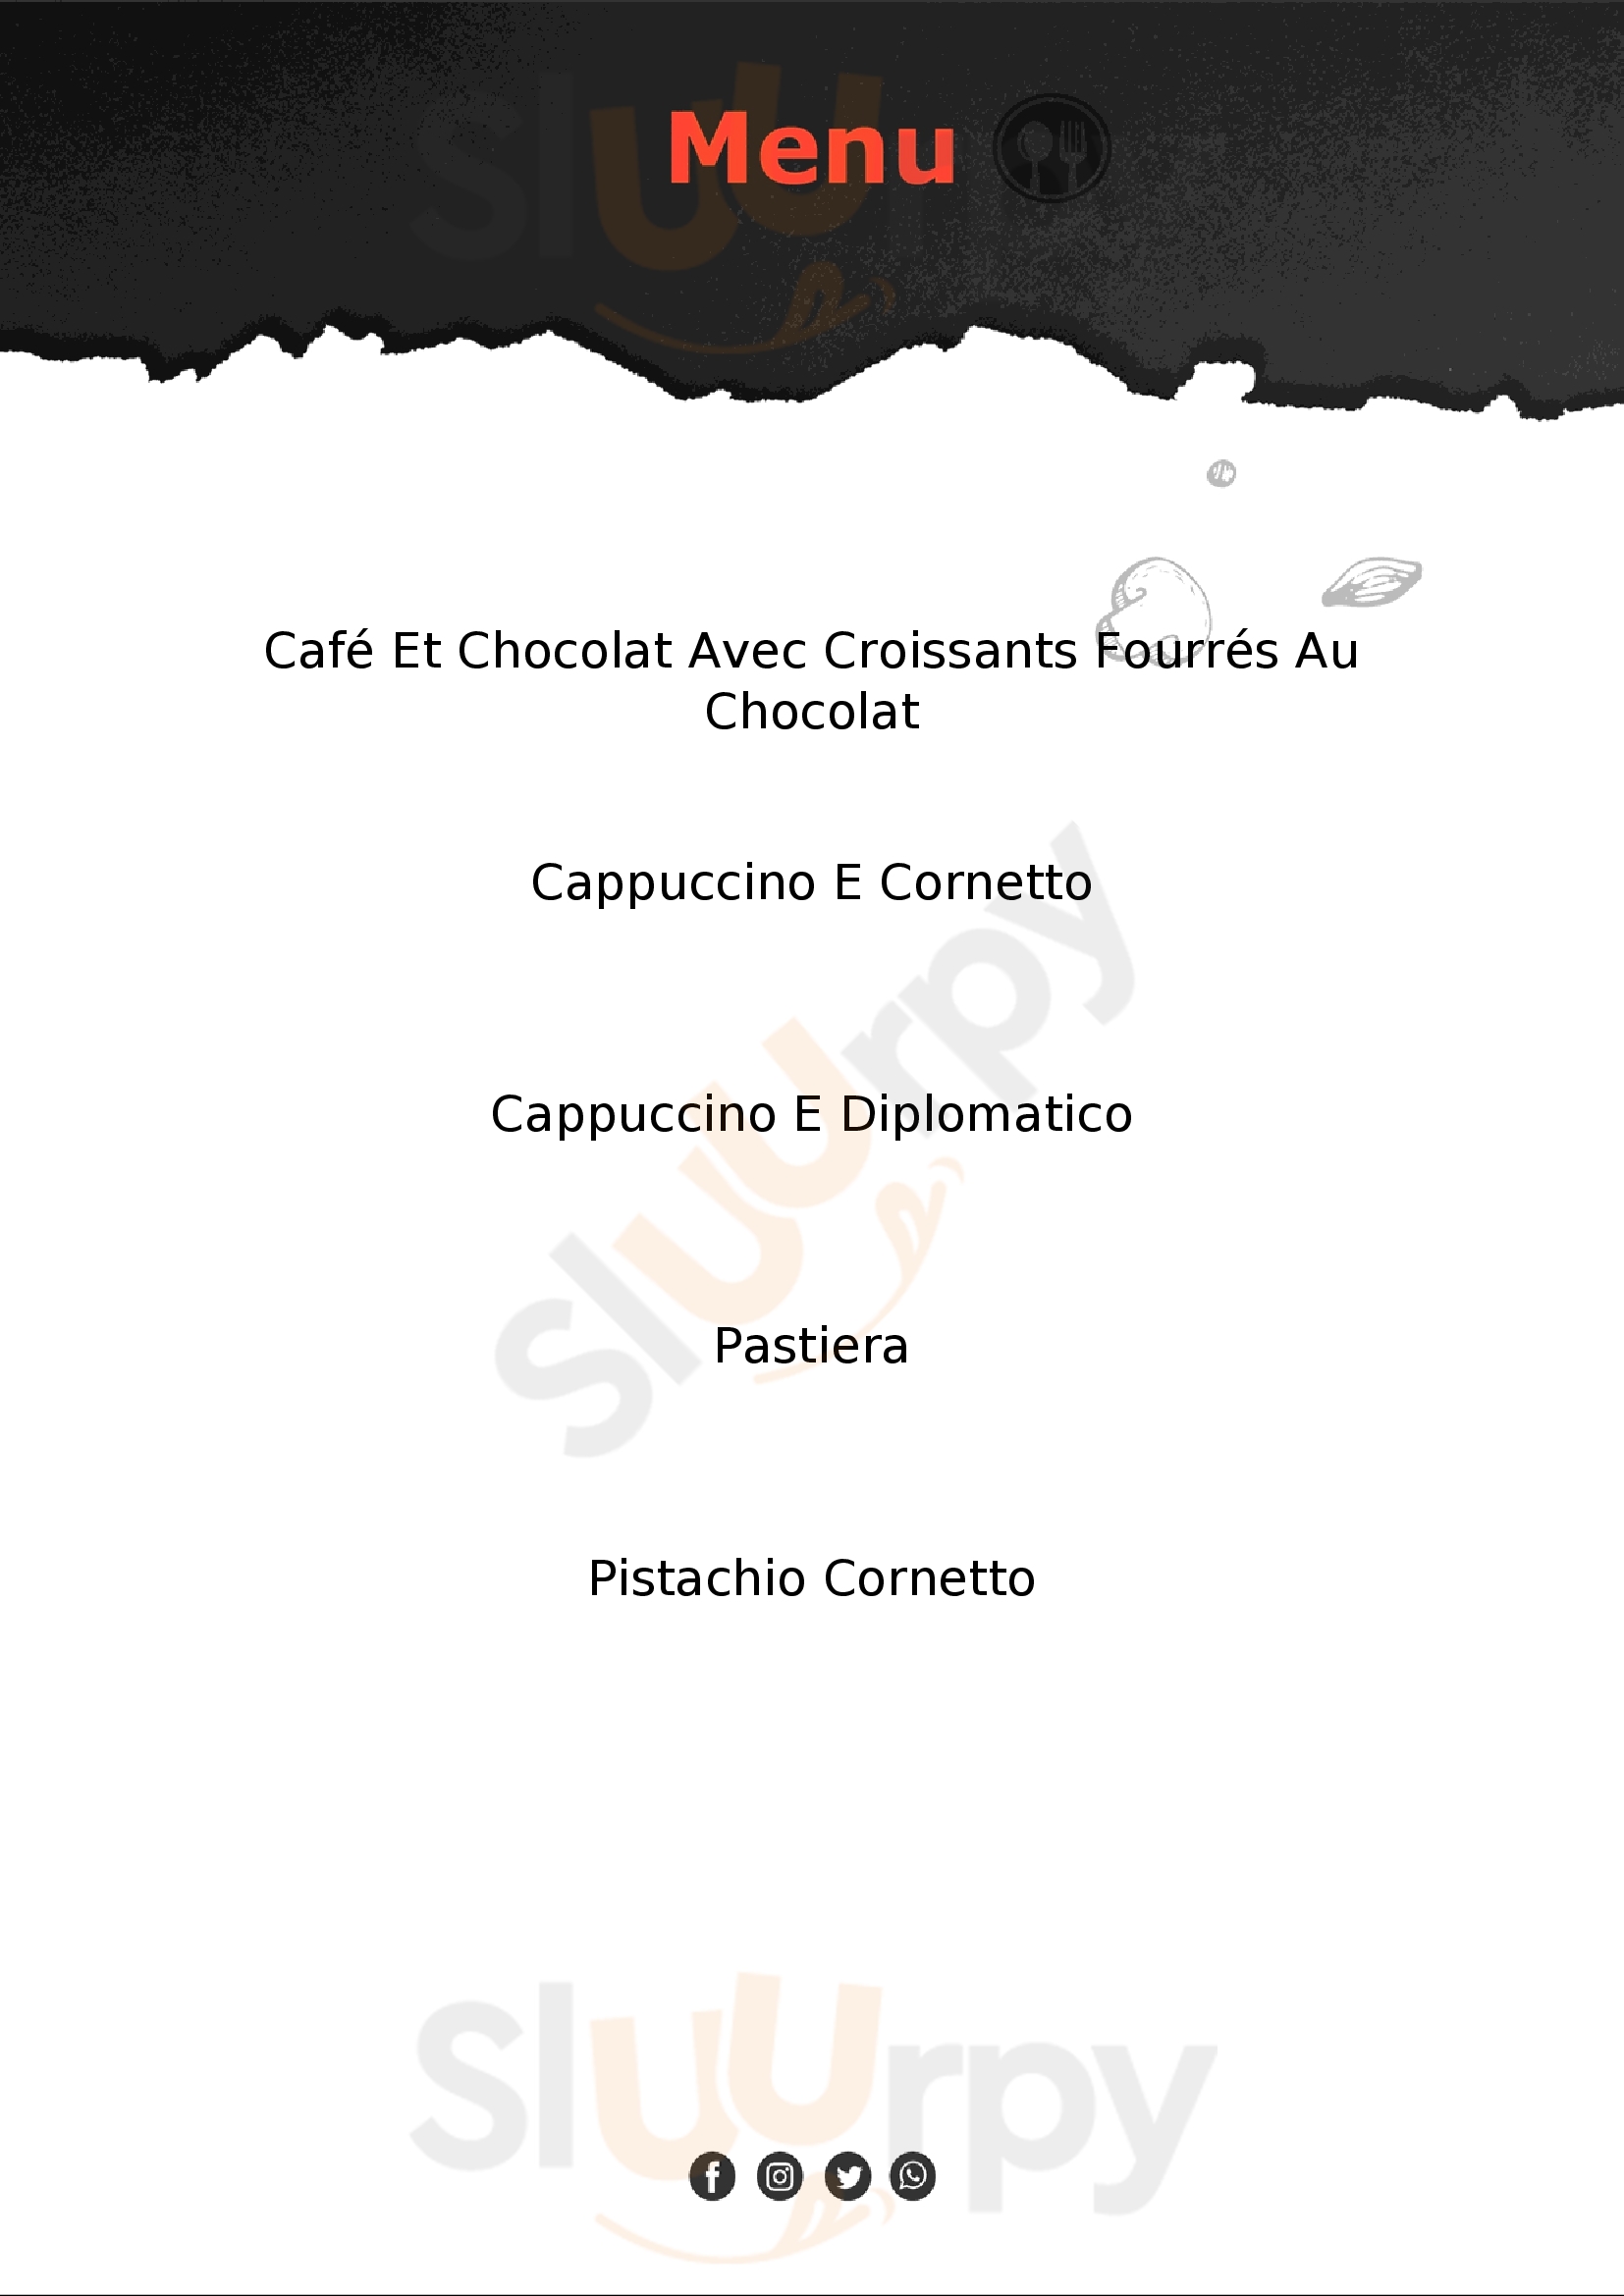 Caffe Pasticceria Bruschi Dal 1937 Arezzo menù 1 pagina